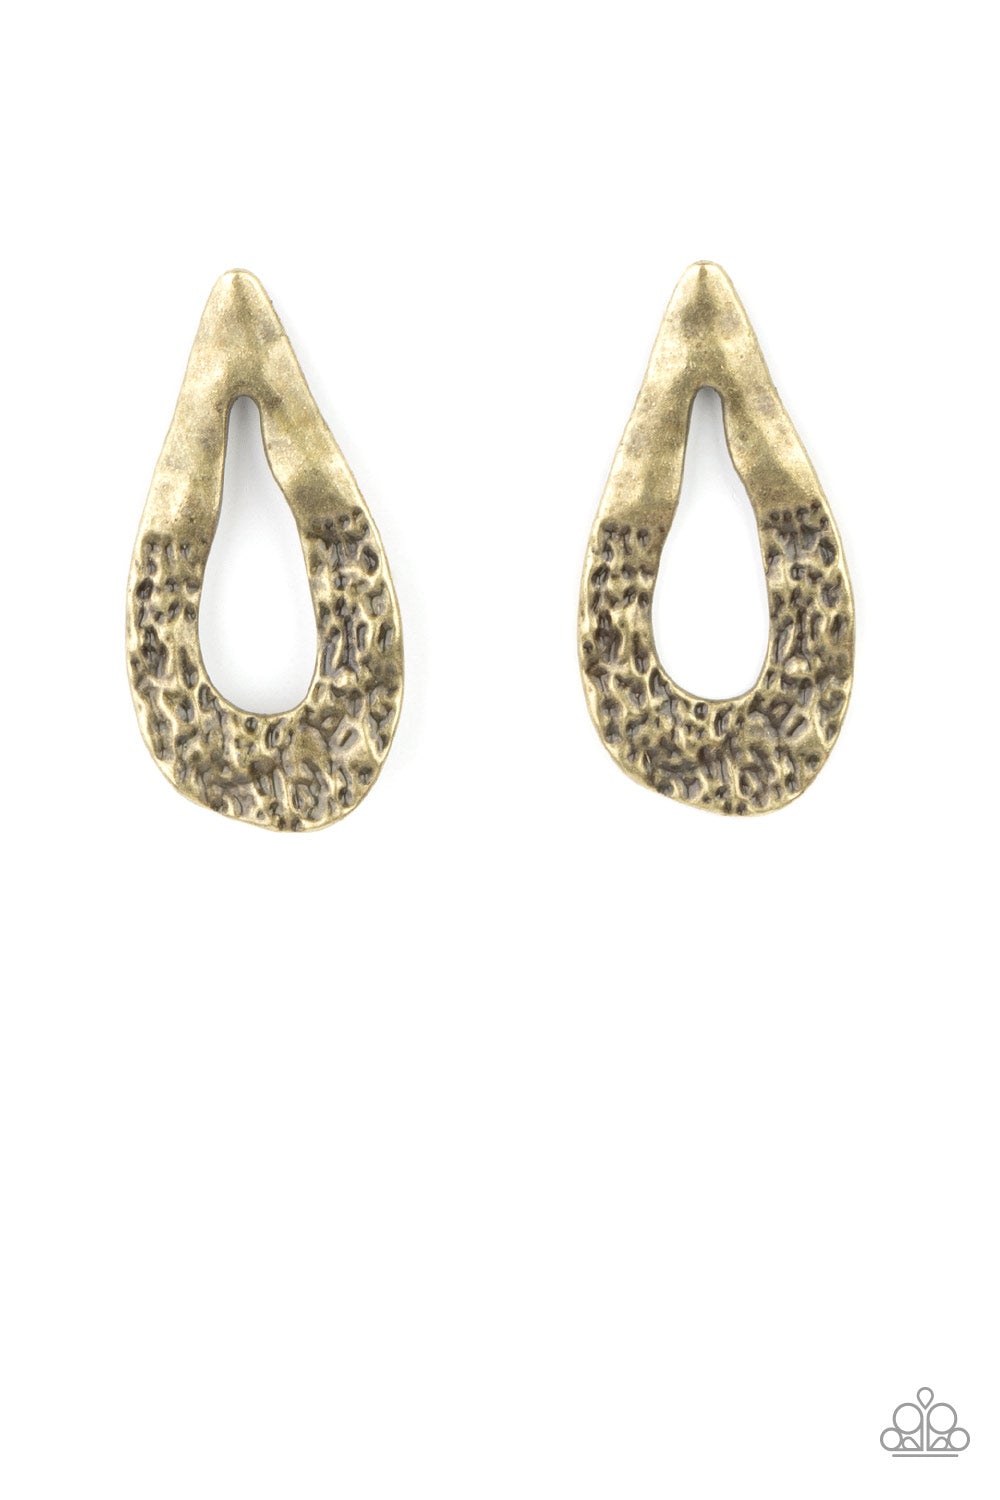 Paparazzi - Industrial Antiquity - Brass - Earrings